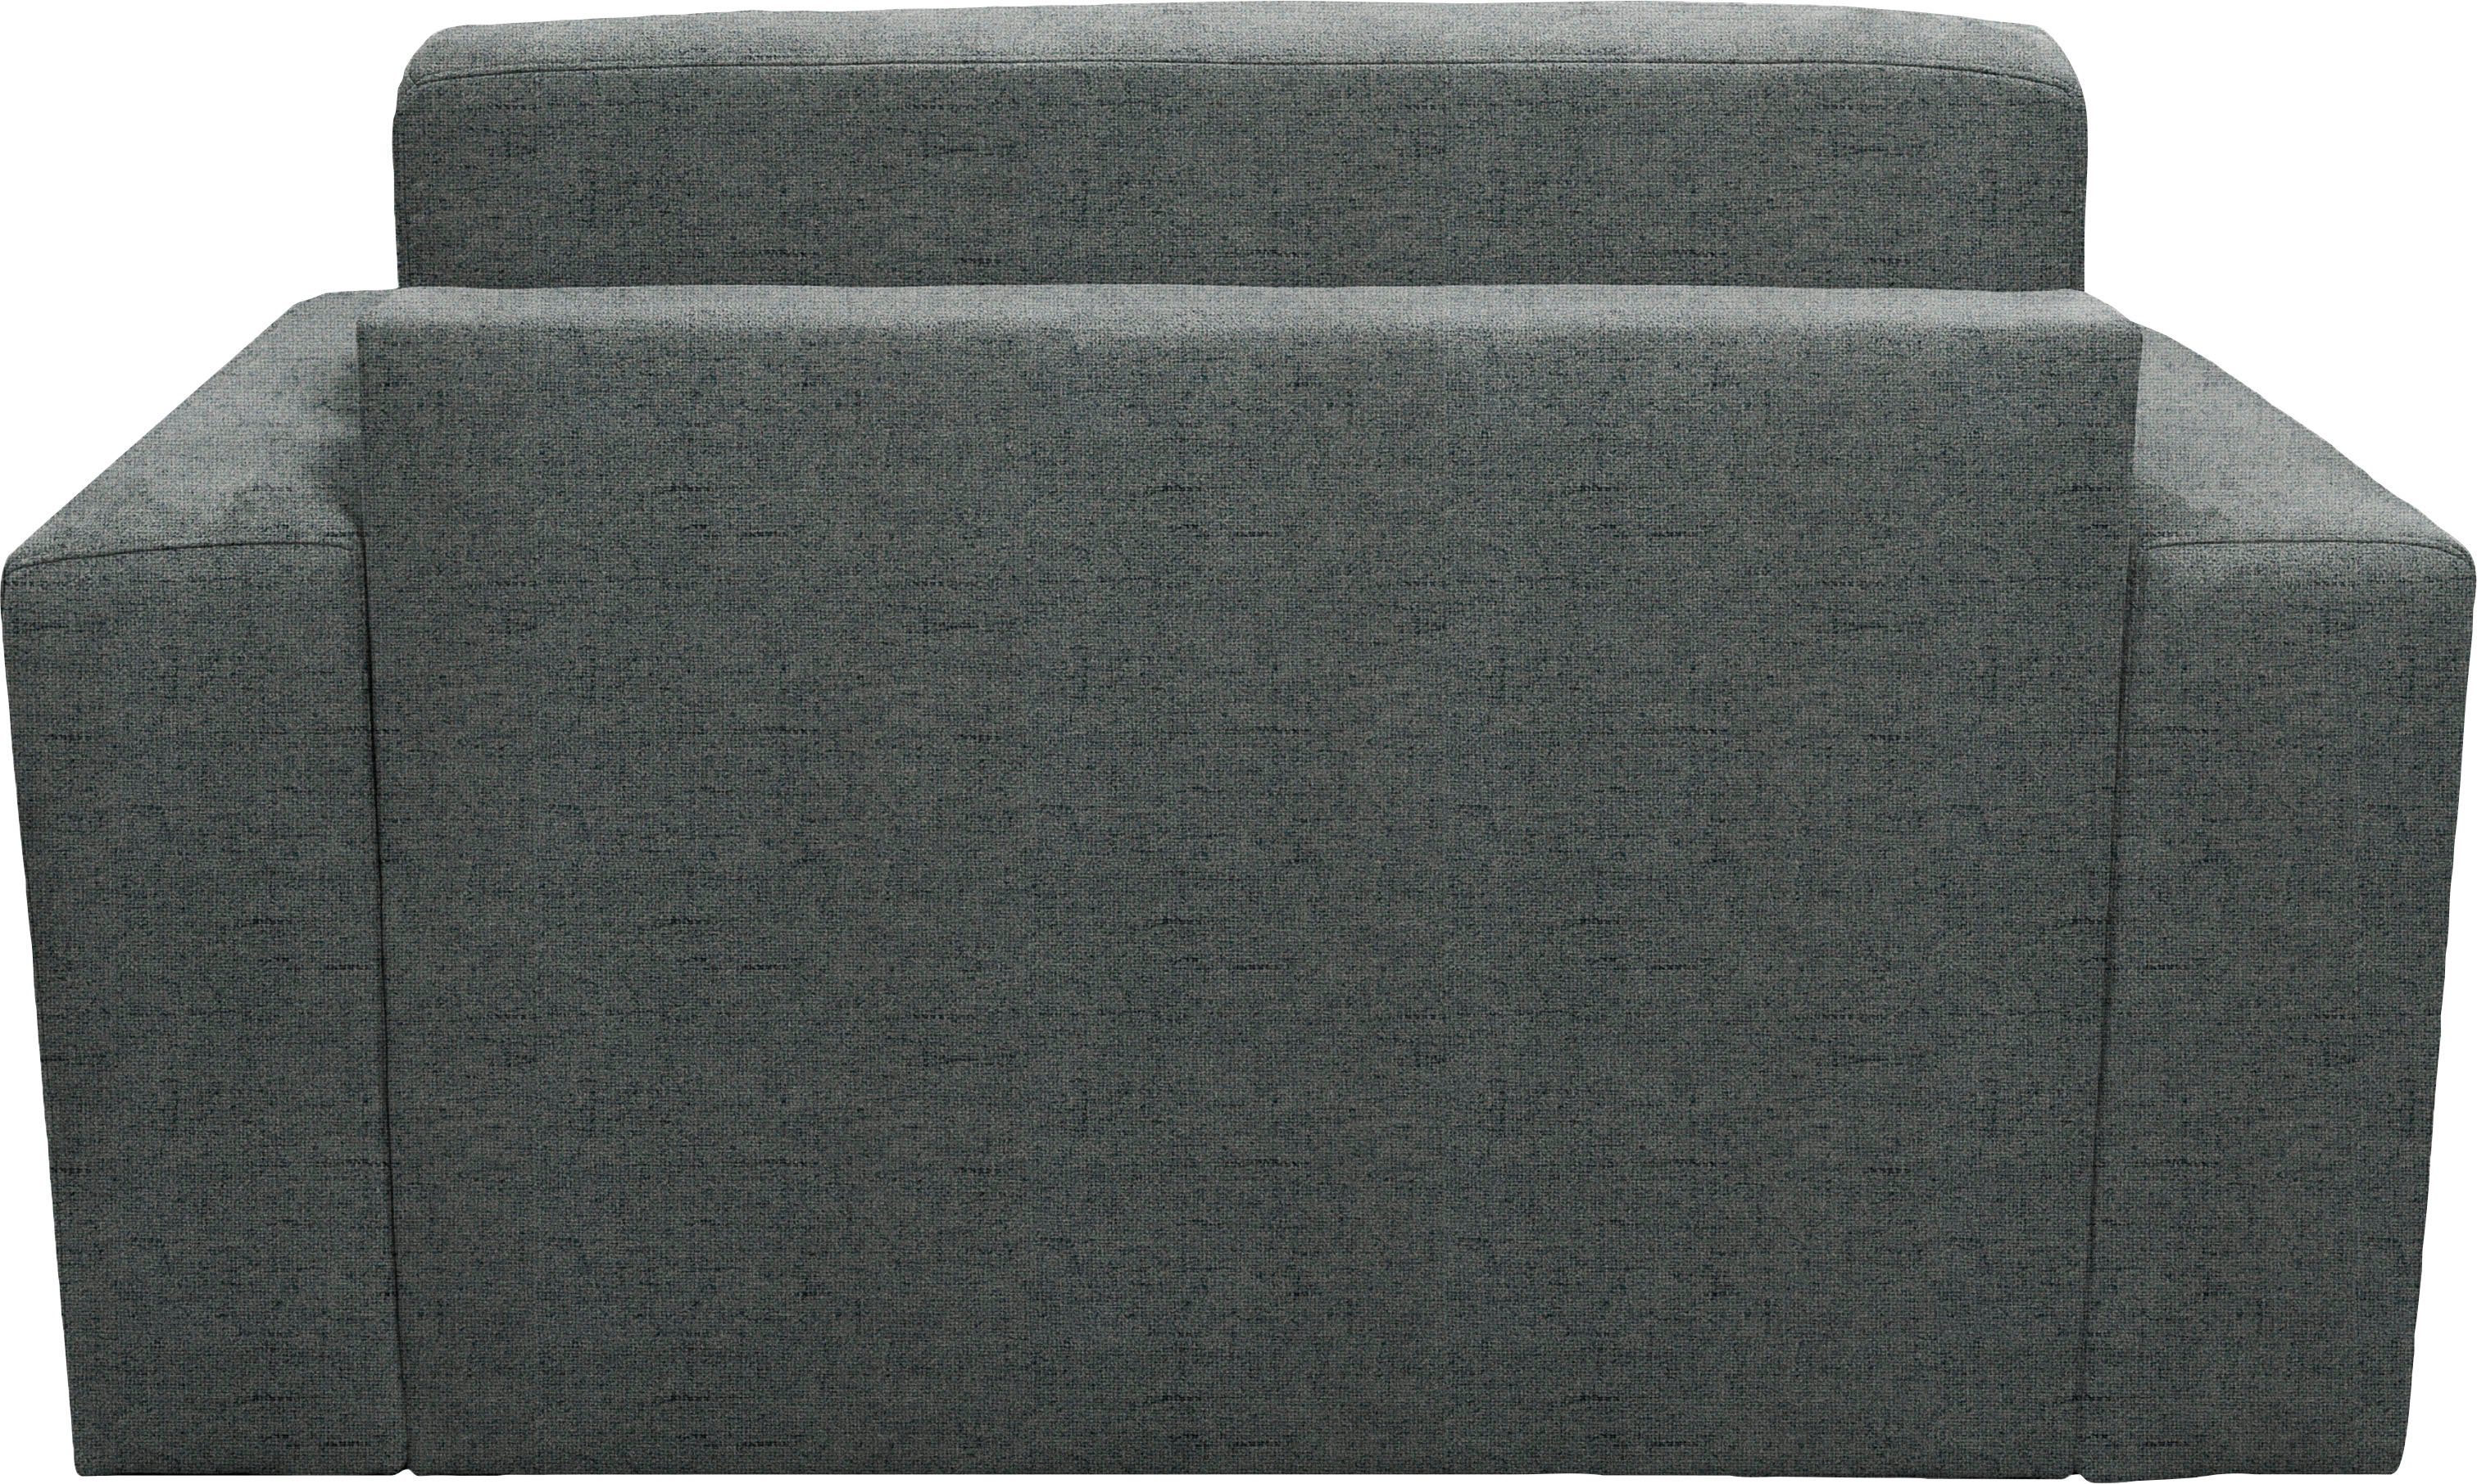 Home affaire Sessel Roma, mit cm ca 83x198 Dauerschlaffunktion, Unterfederung, Liegemaße